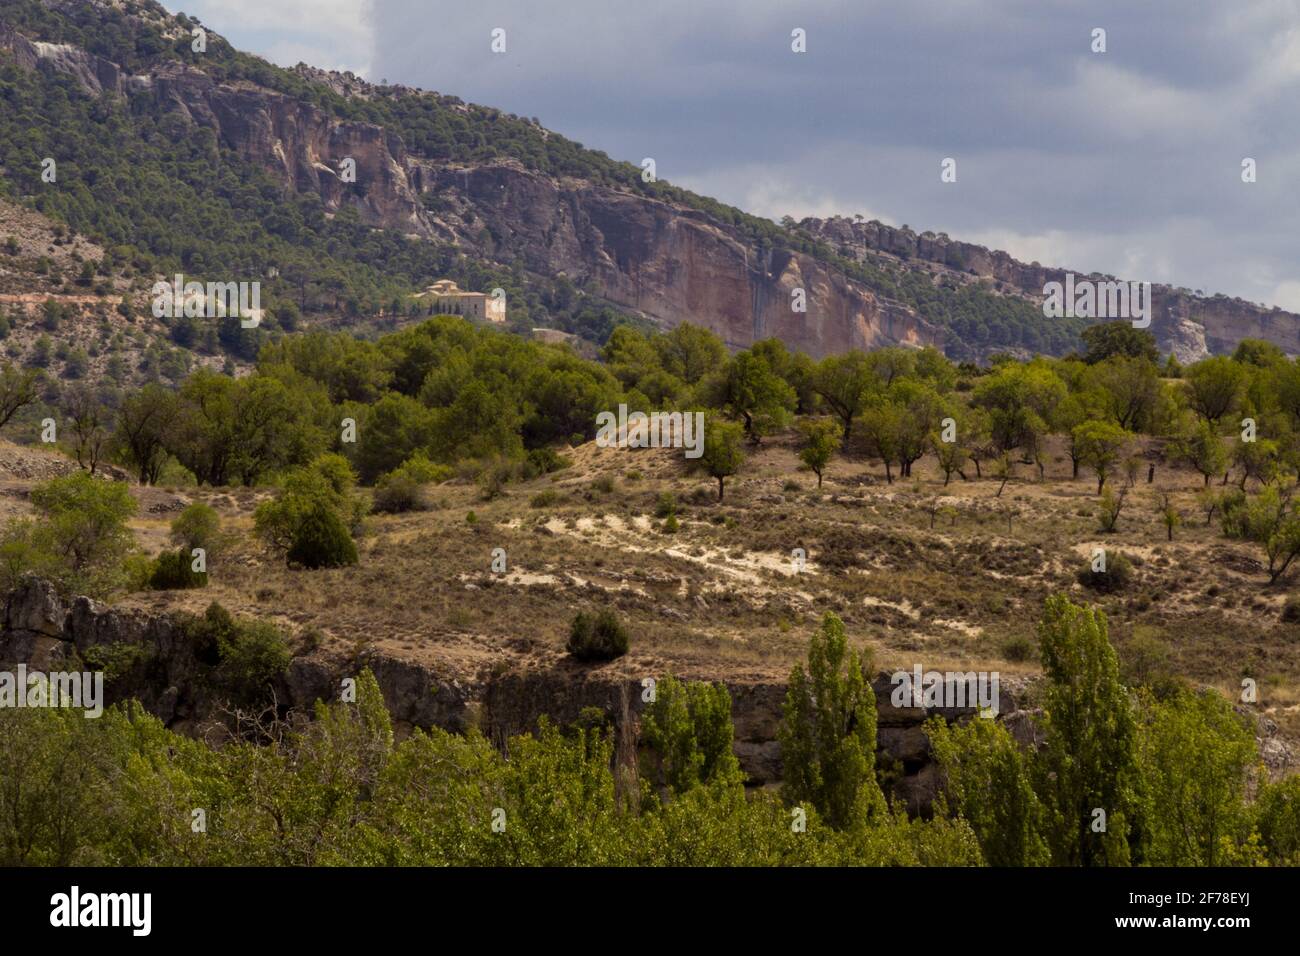 Tiro ancho de una cadena montañosa cubierta por pinos con un monasterio en la ladera Foto de stock